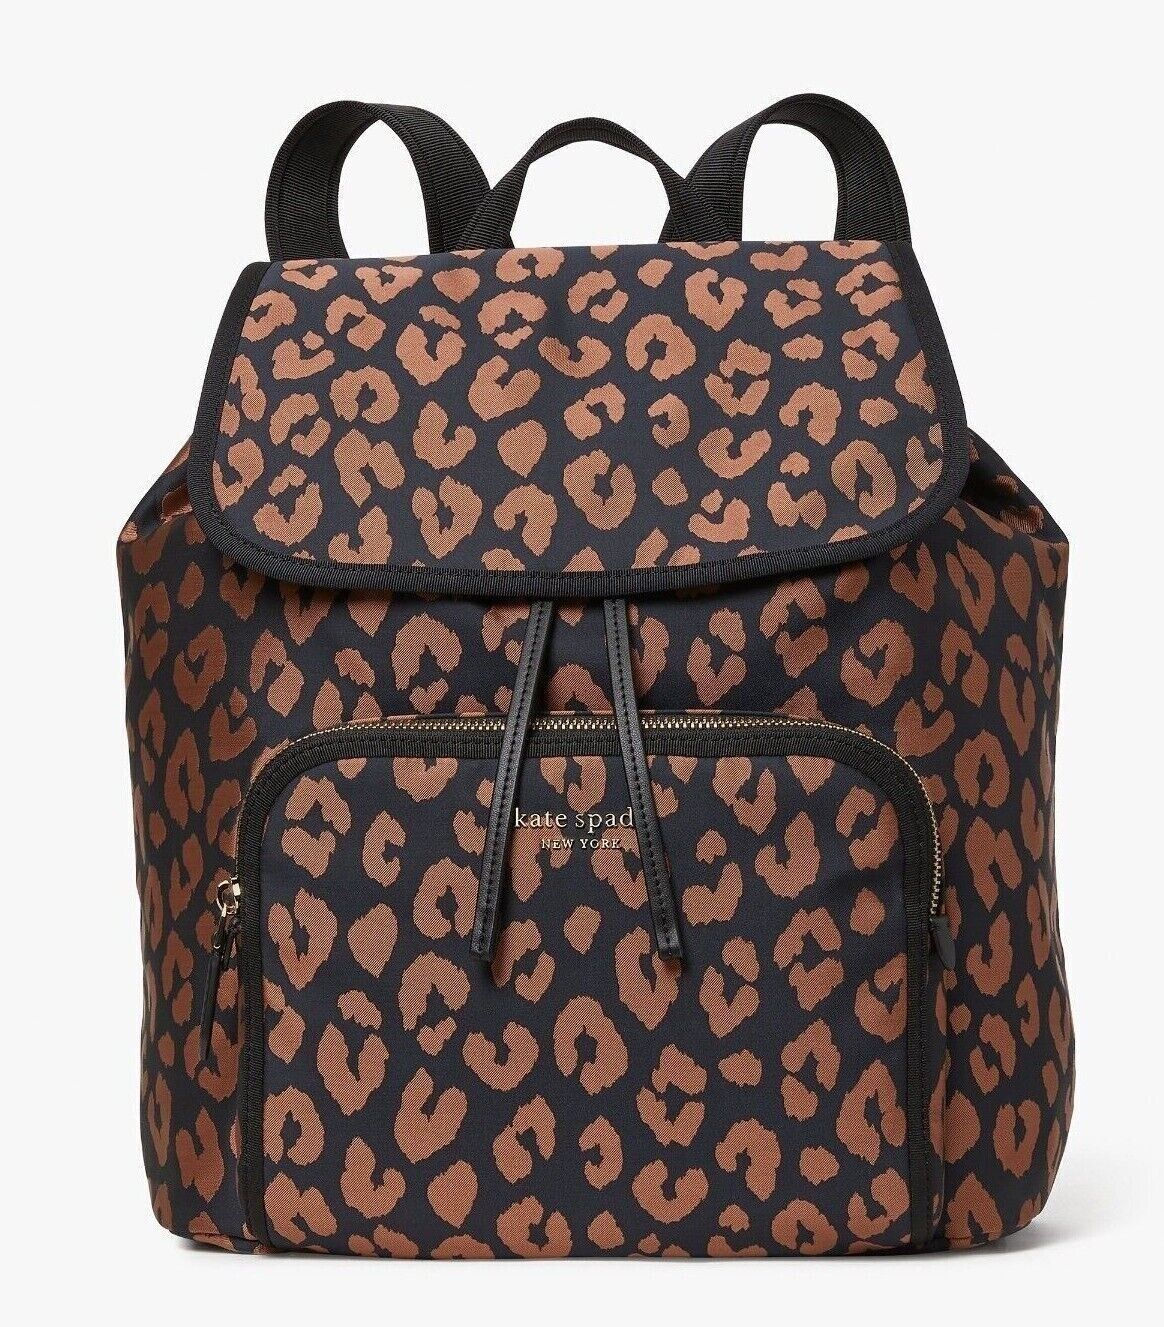 Primary image for NWB Kate Spade Sam Leopard Nylon Medium Backpack K4463 Cheetah $198 Dust Bag FS